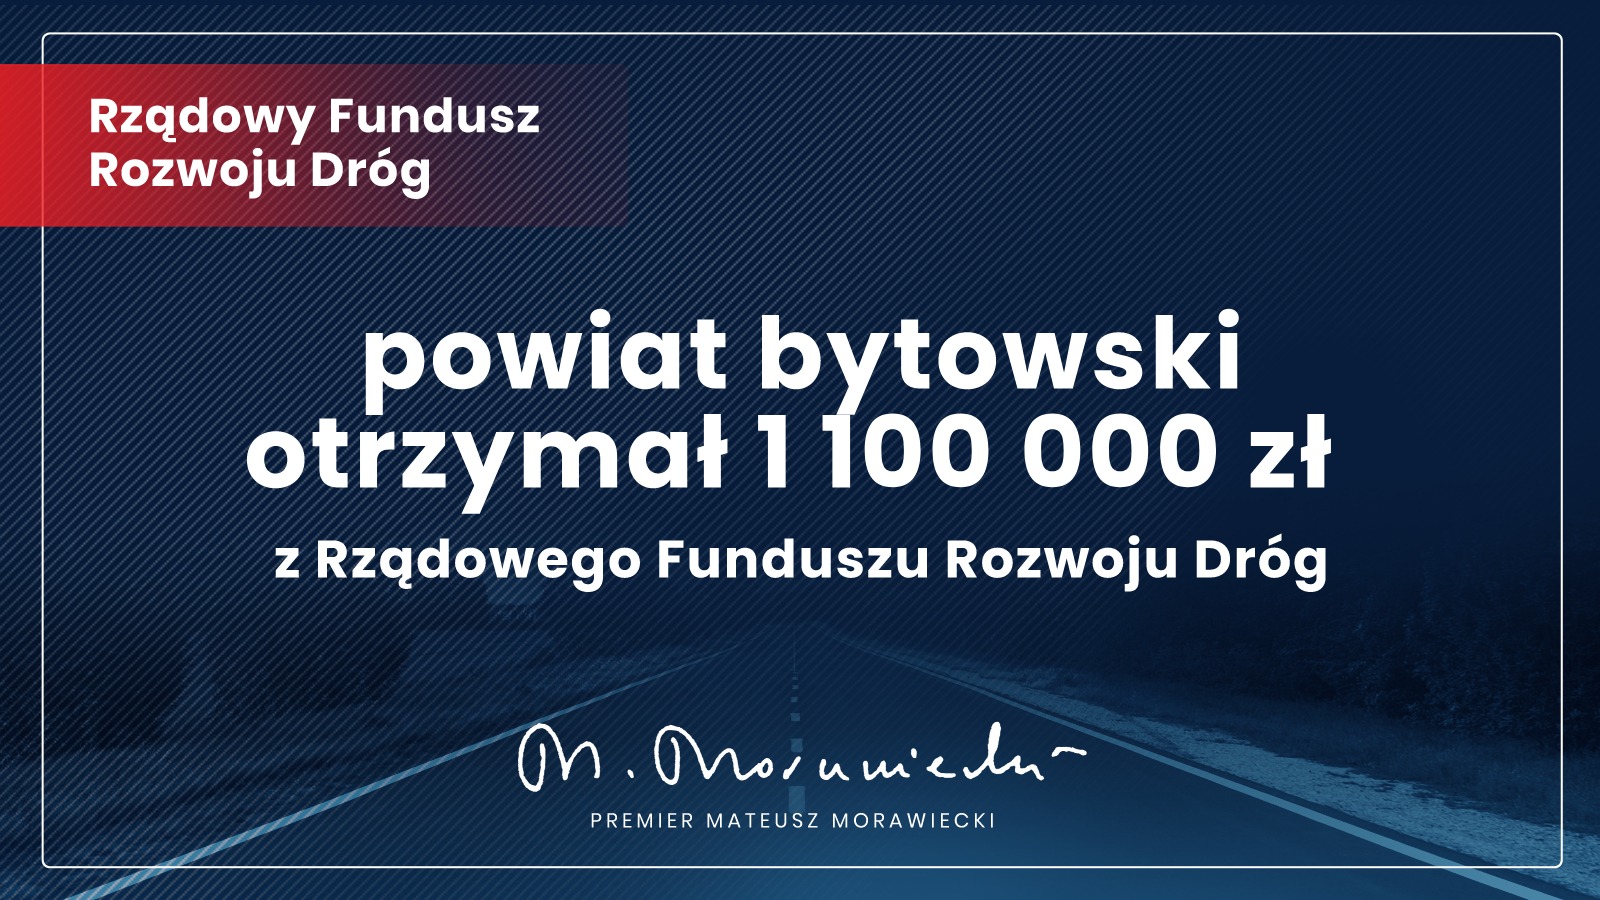 Ponad 2 mln zł dla regionu bytowskiego na modernizację dróg z Rządowego Funduszu Rozwoju Dróg!